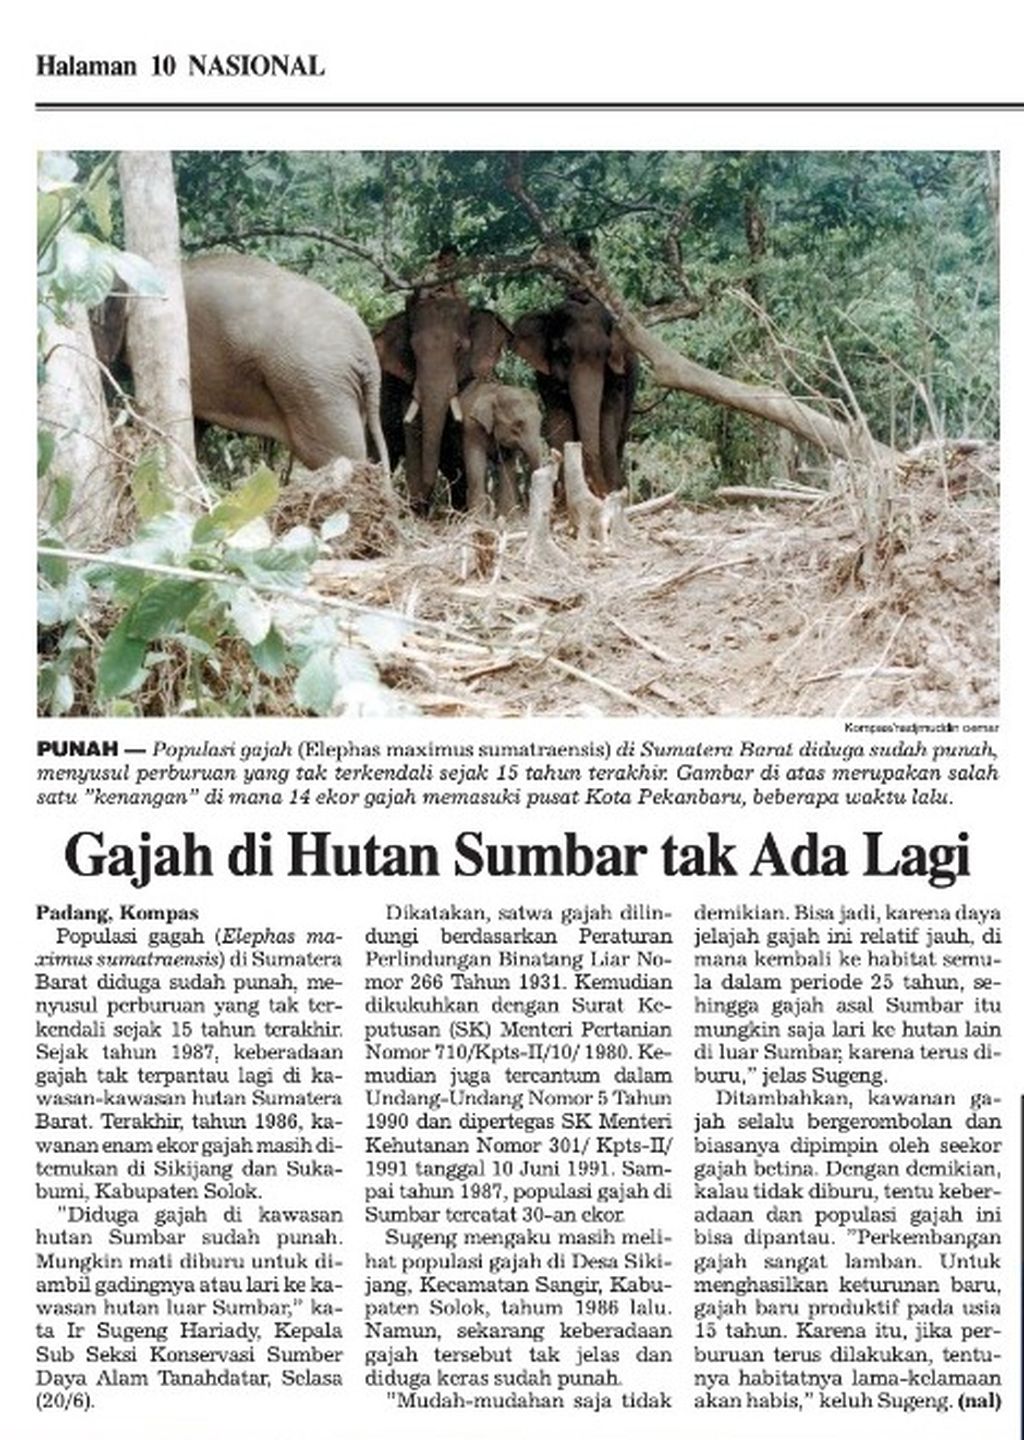 Berita hilangnya gajah di Sumatera Barat di harian <i>Kompas</i>, Juni 2000.